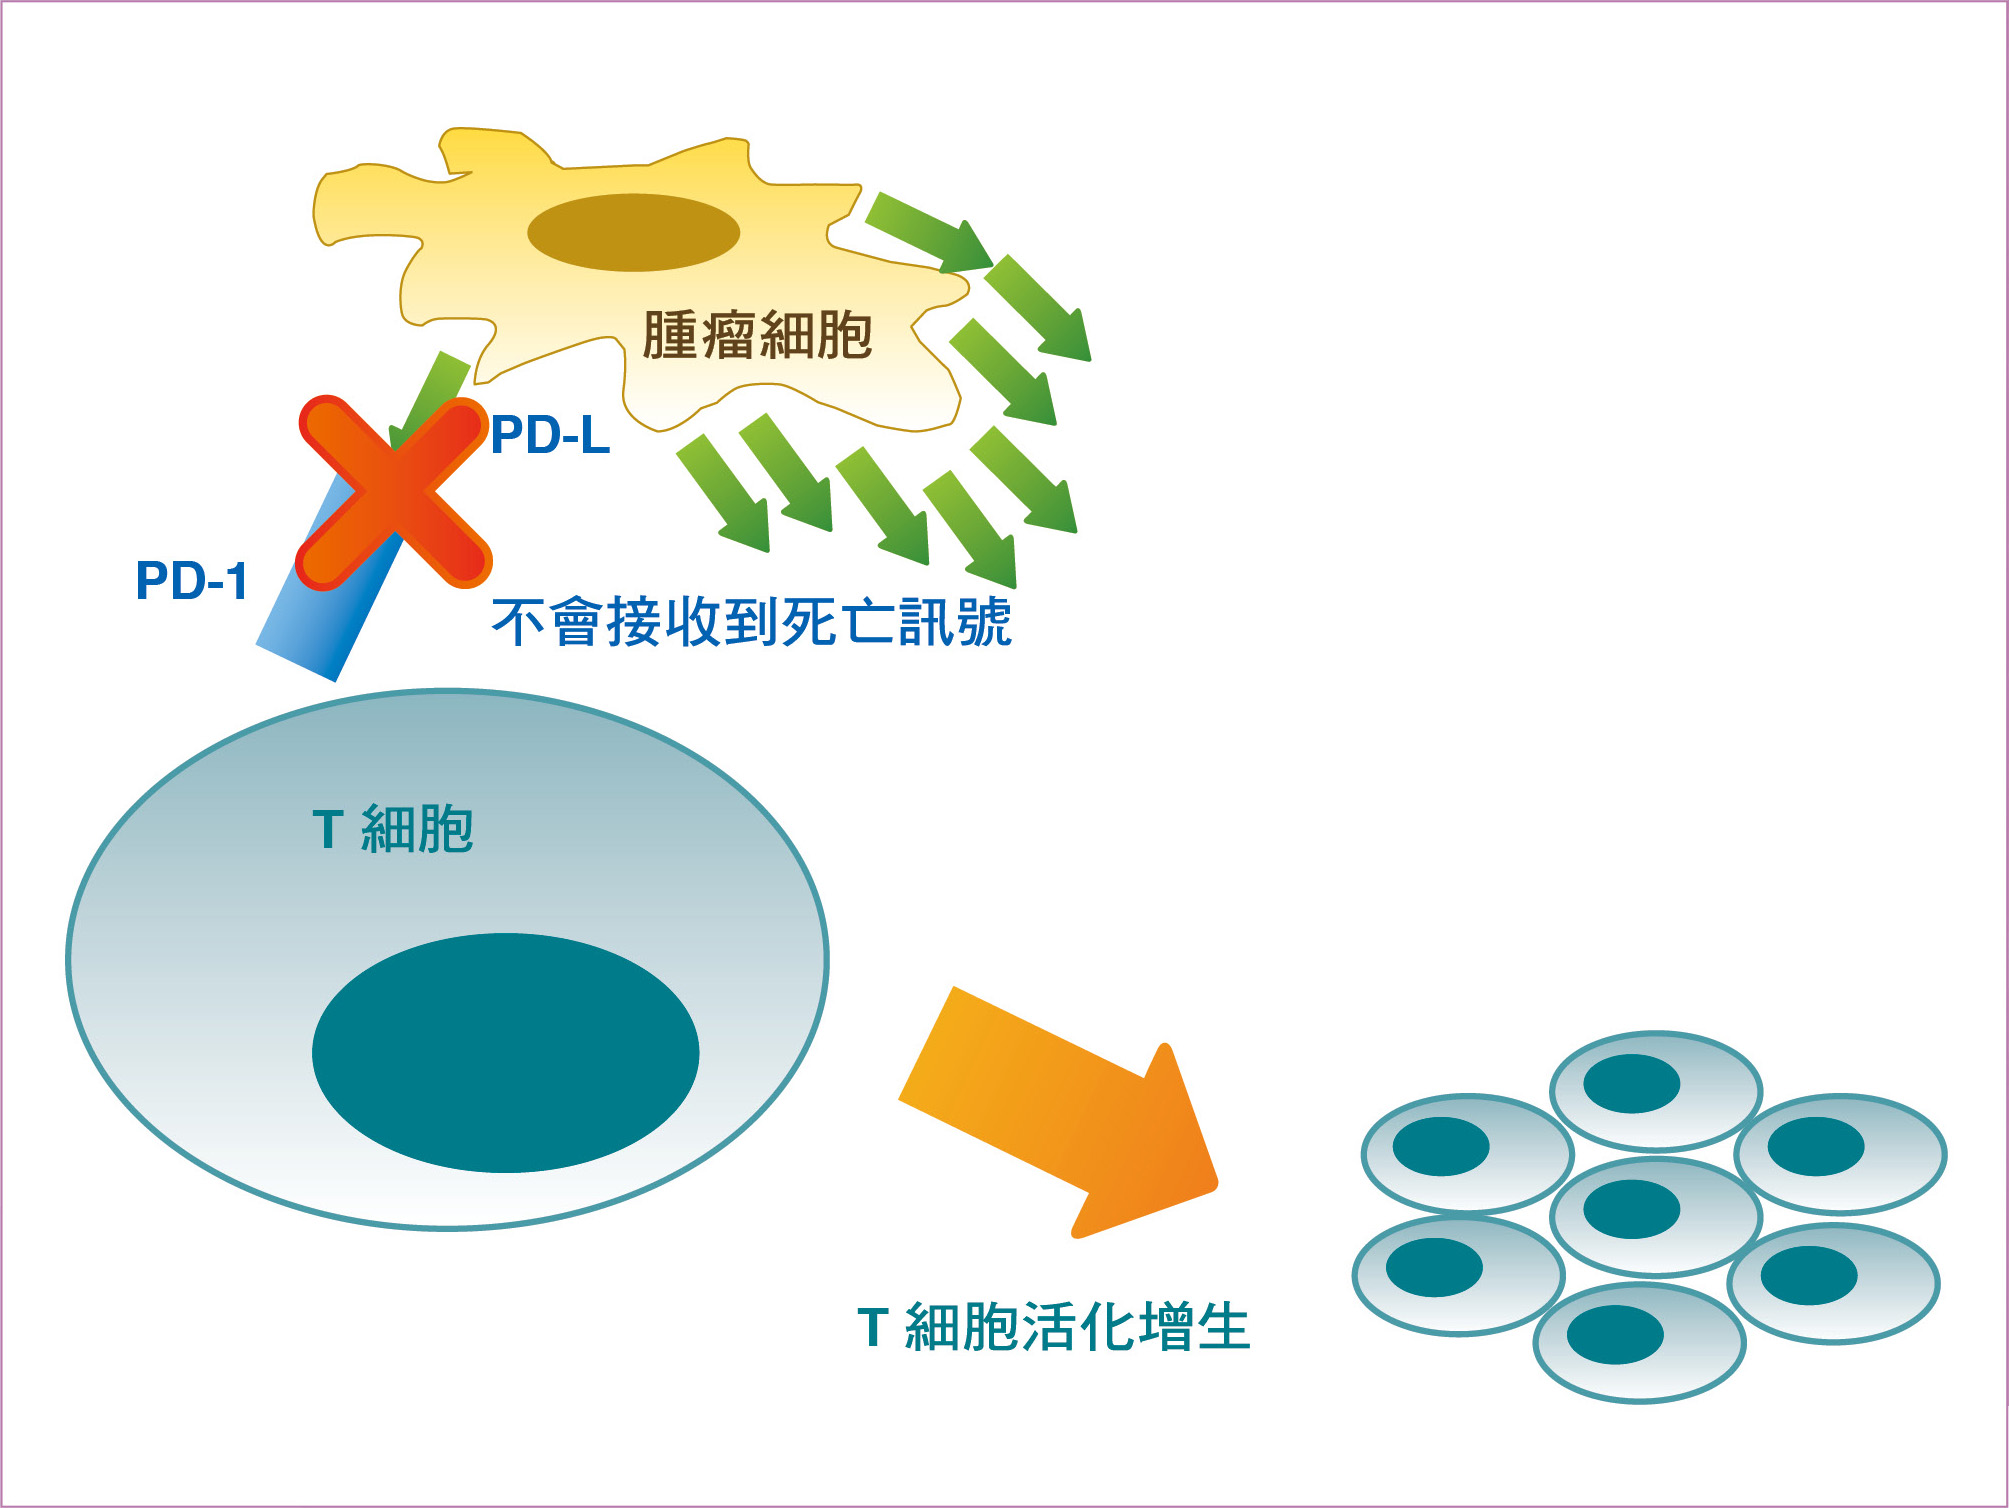 在施予抗PD-1藥物的治療中，導致T細胞存活的示意圖。其中抗PD-1藥物會阻止T 細胞上的PD-1與腫瘤細胞上的PD-L 結合，無法誘發T 細胞的死亡訊號而得以存活，進而對抗腫瘤，增強抗腫瘤的免疫反應。